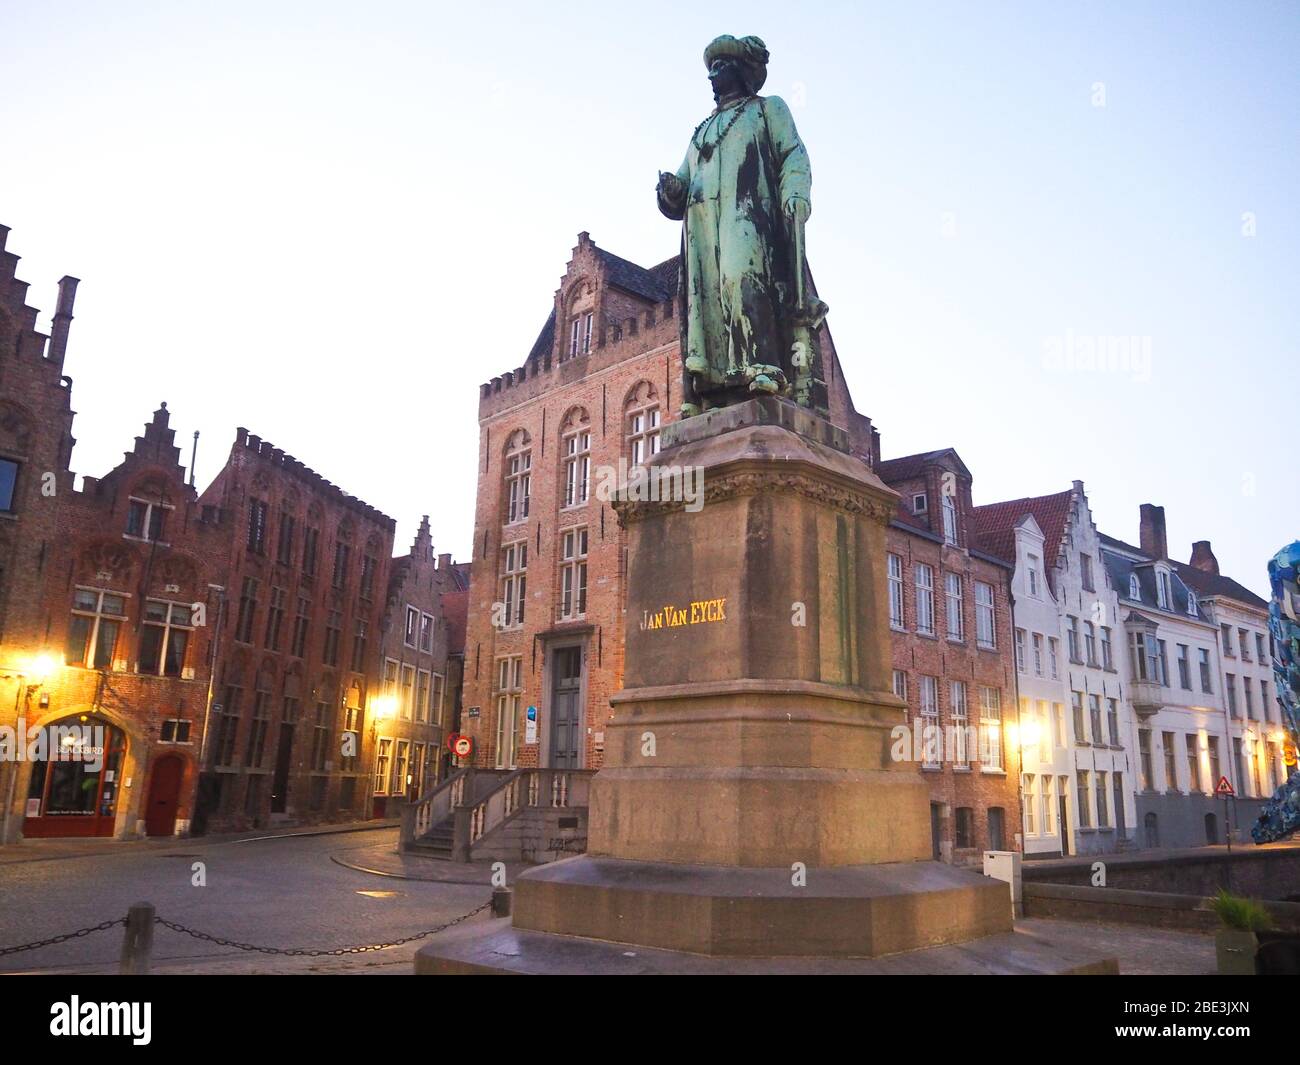 Statue of Jan van Eyck in Brugge, Belgium Stock Photo